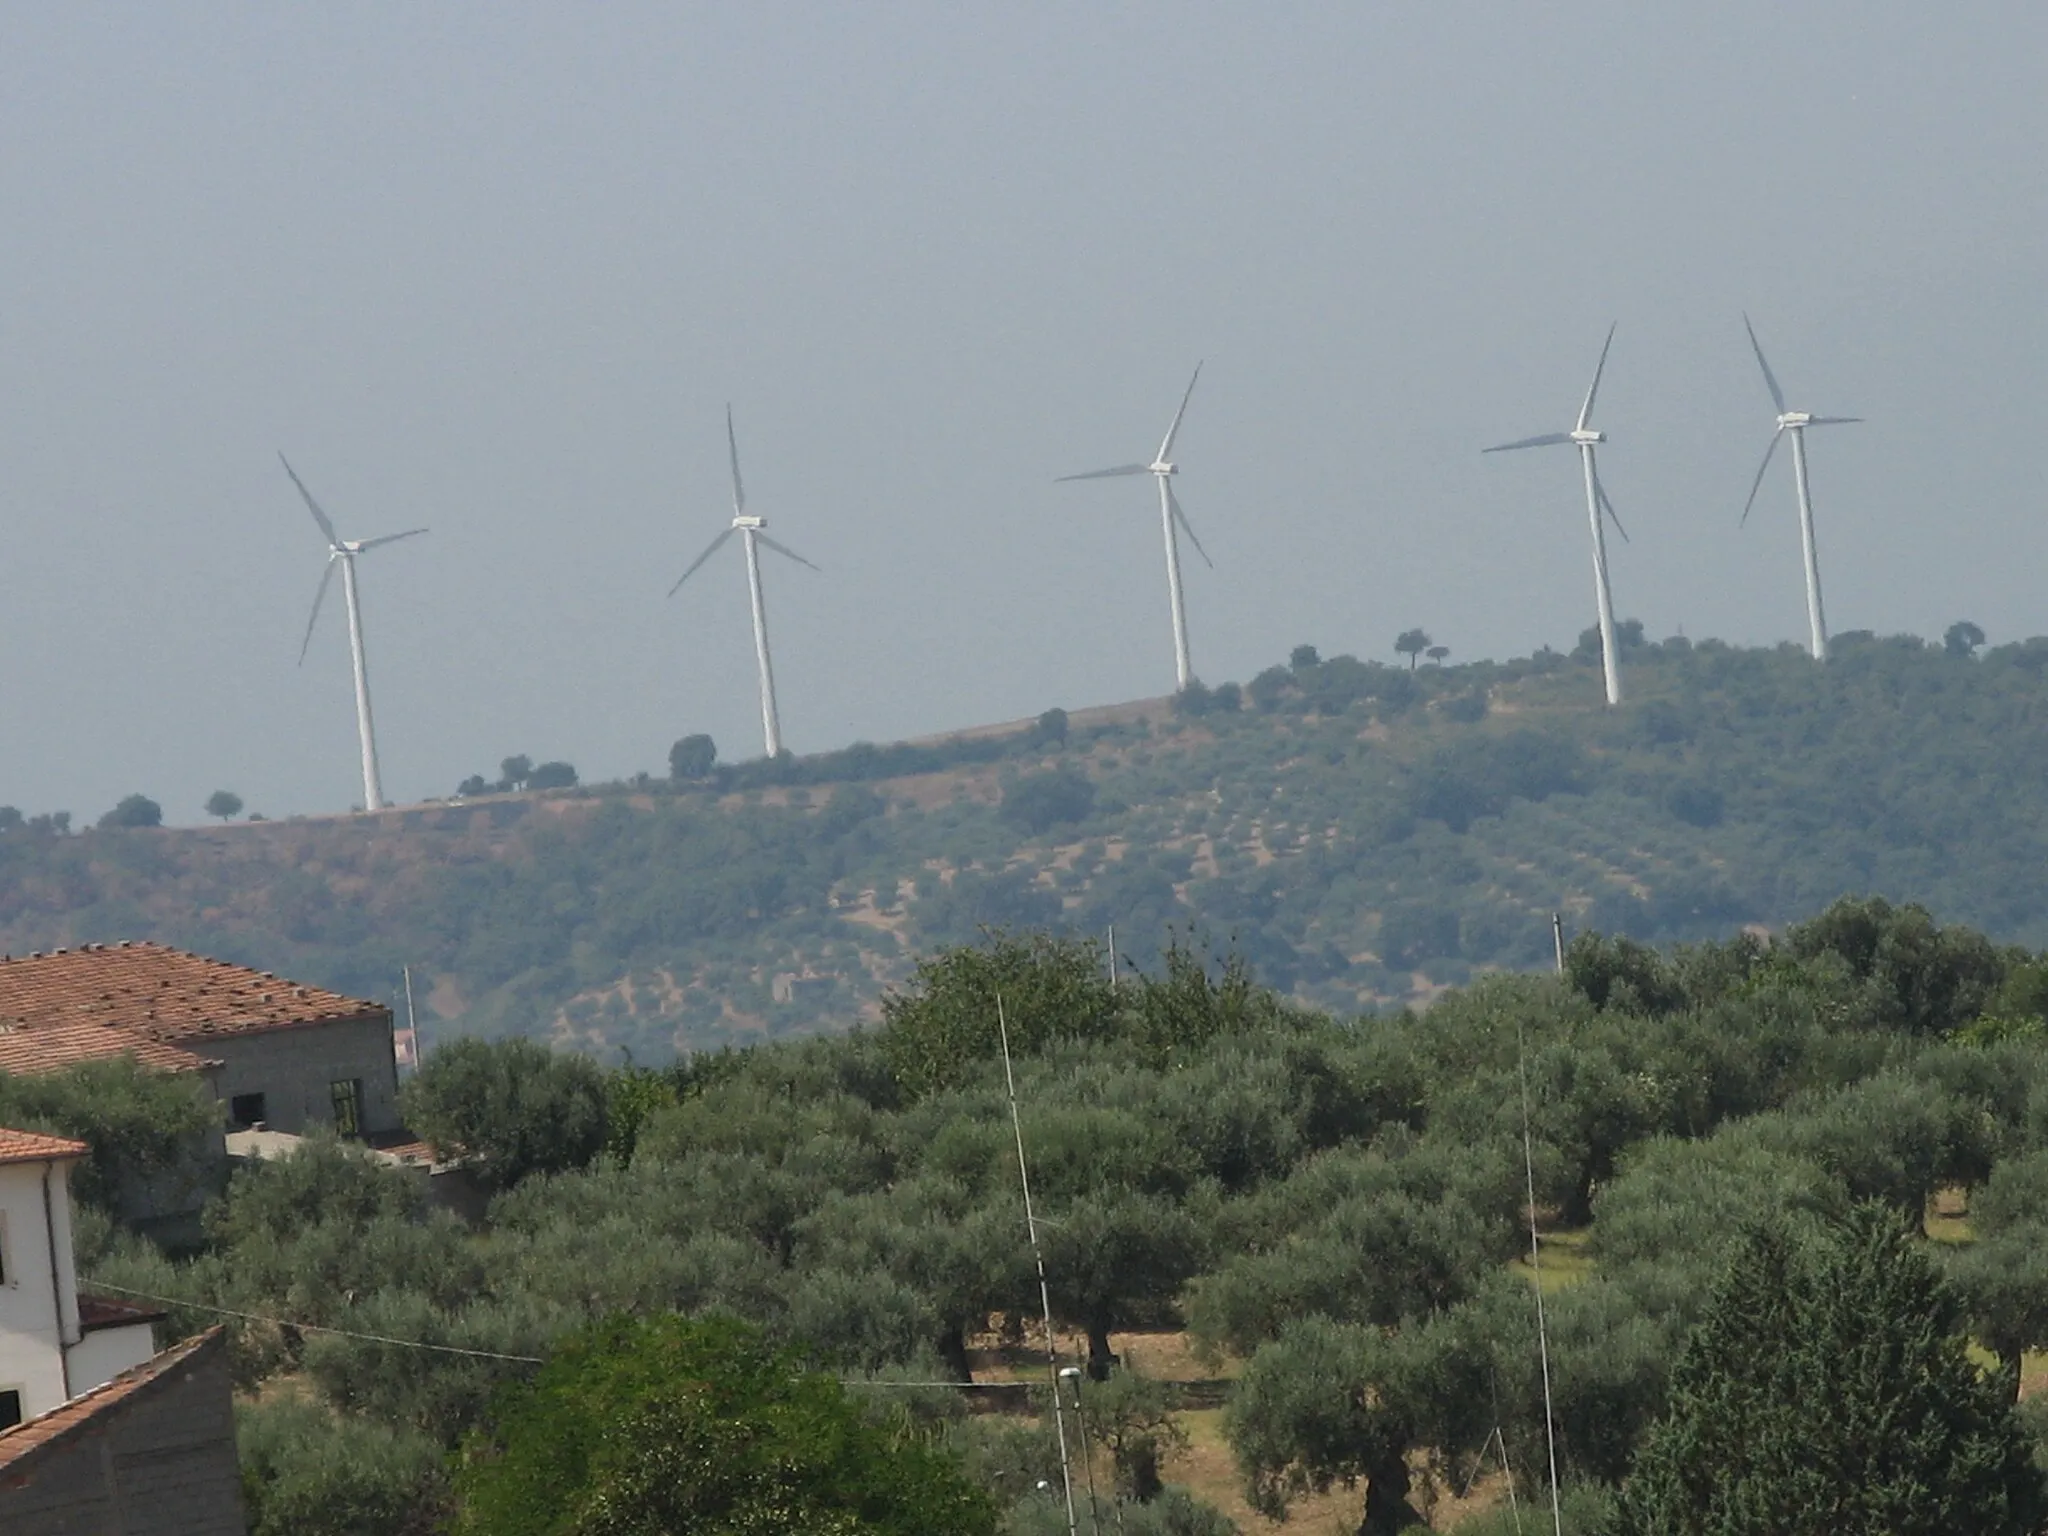 Photo showing: Impianto eolico di Albanella. Sulla collina di San Chirico, a pochi km ad ovest di Albanella, sono state impiantate dieci pale per la produzione di energia eolica alte 50 metri e visibili anche dalla costiera amalfitana.
L'impianto, entrato in attività nel febbraio 2004, è caratterizzato da 10 aerogeneratori (modello V52) da 850 kWh ciascuno che producono oltre 20 milioni di kWh all'anno. L'impianto eolico è stato progettato e sviluppato dalla IWT (Italian Wind Technology) facente capo alla multinazionale danese "Vestas".